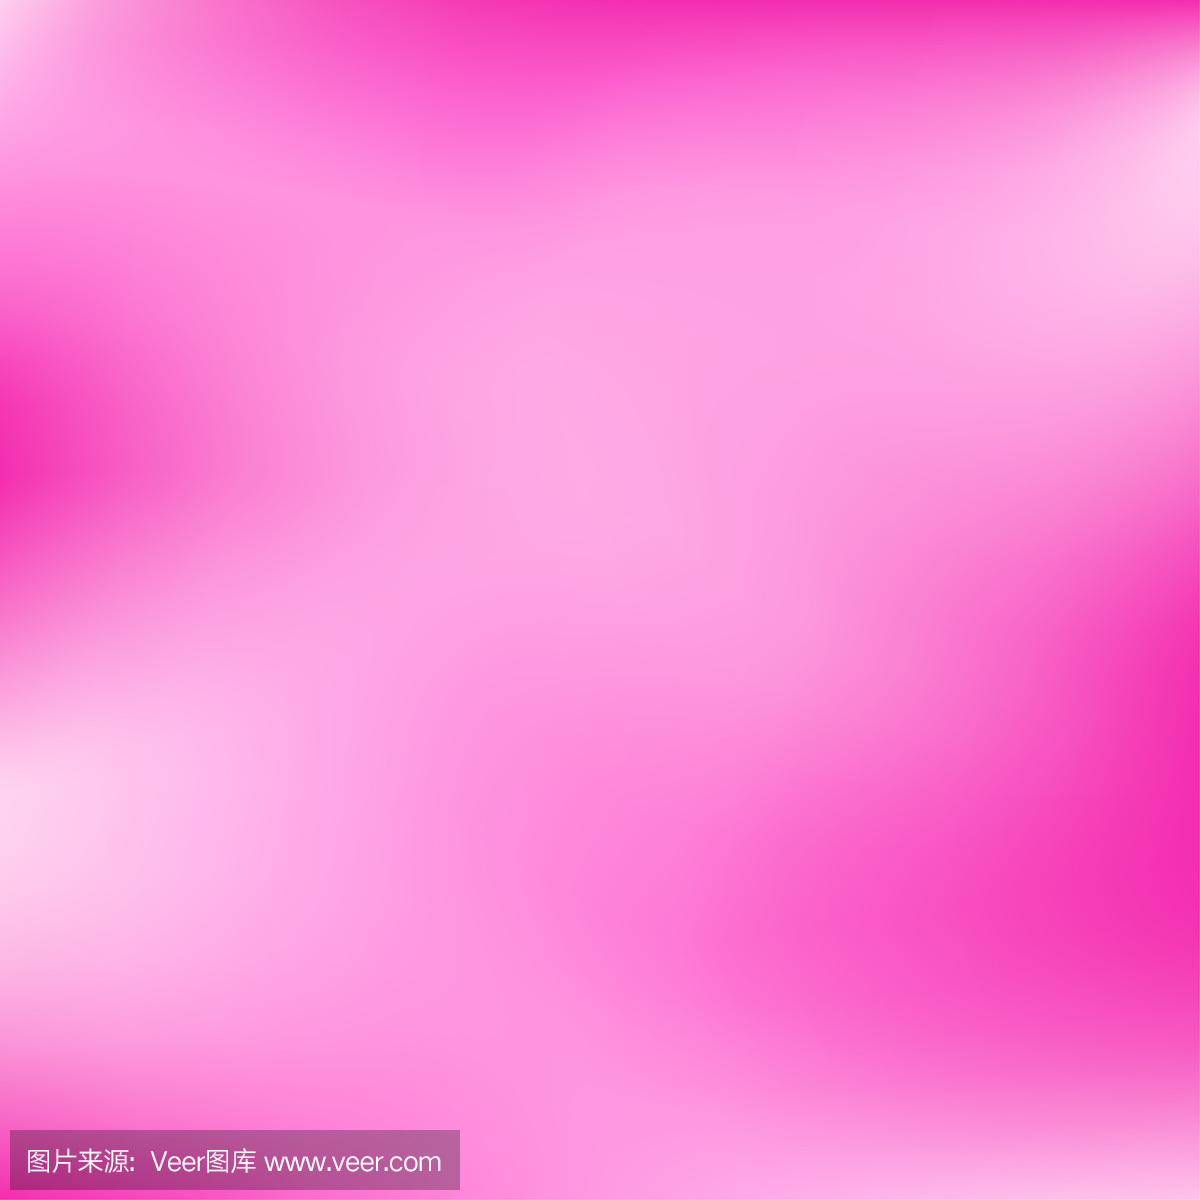 矢量粉红色模糊渐变样式背景。抽象流畅色彩丰